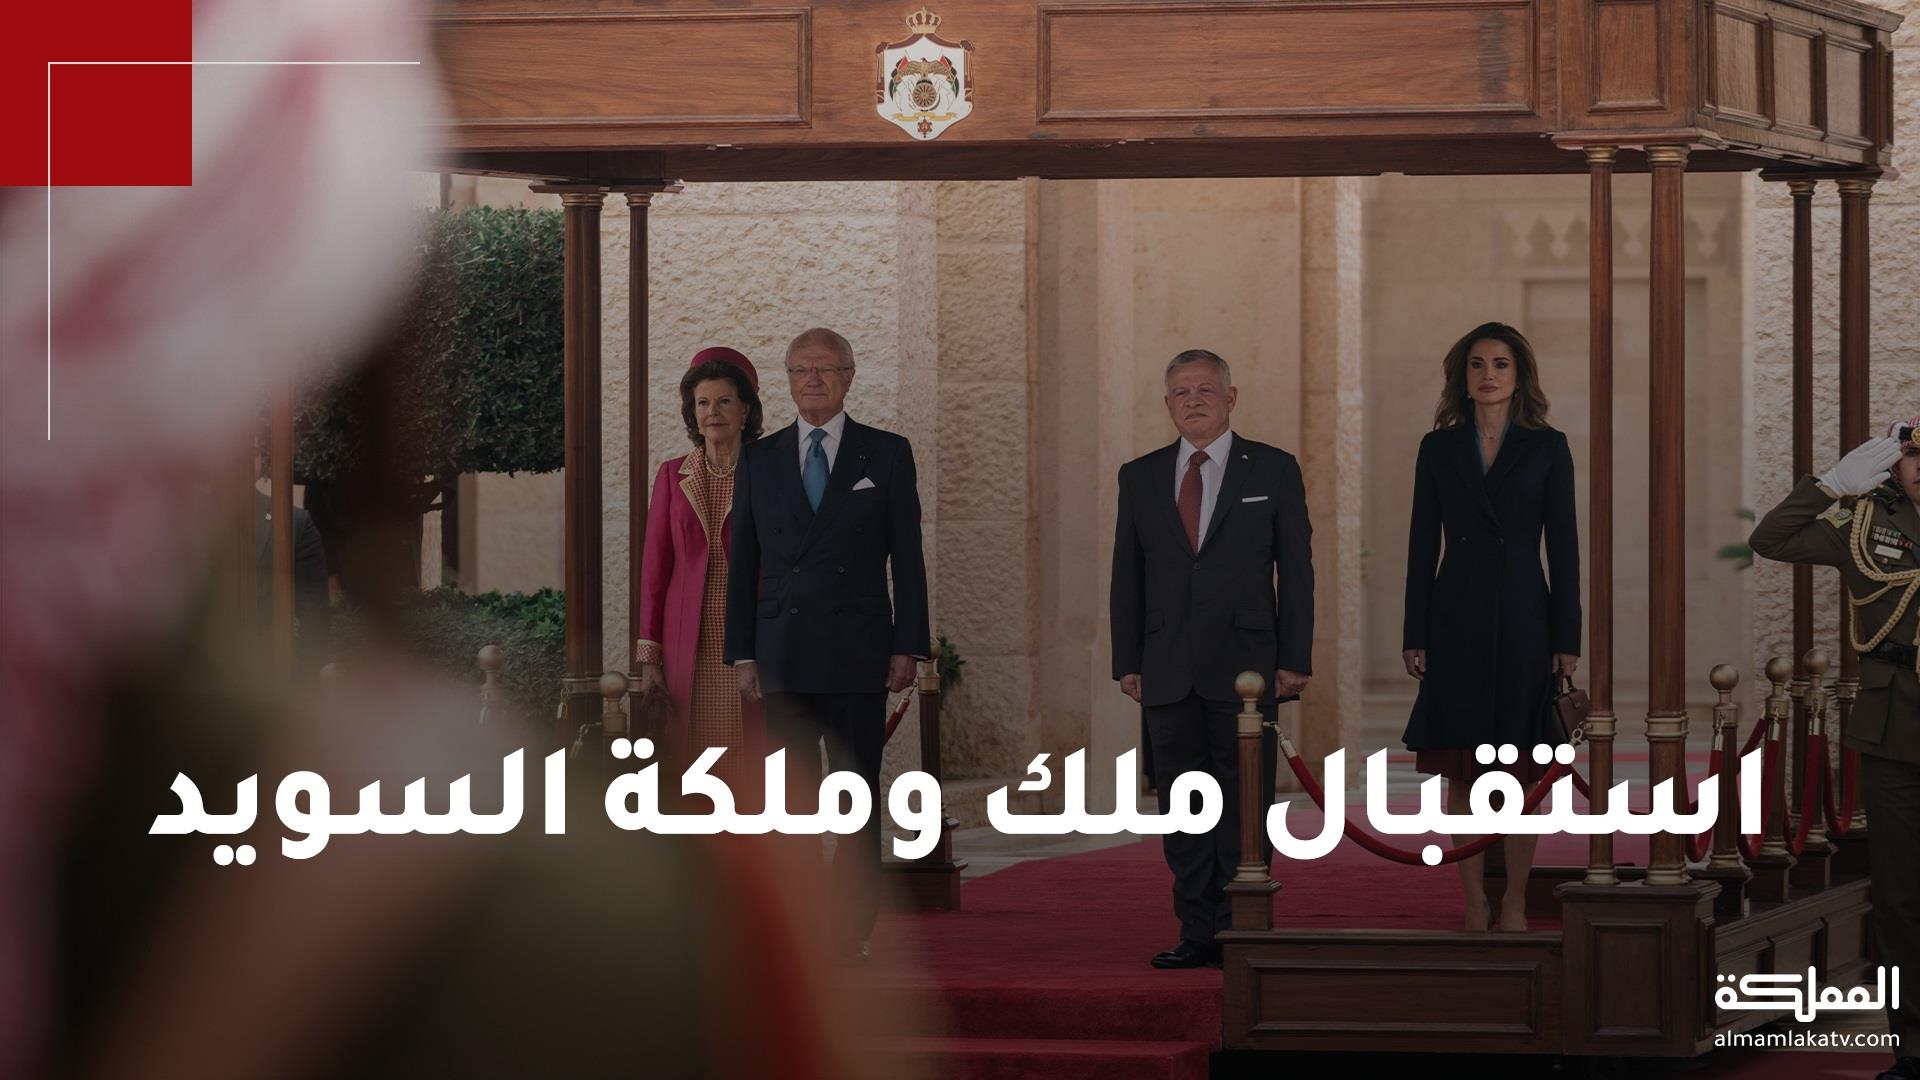 الملك والملكة وولي العهد يستقبلون ملك وملكة السويد في قصر الحسينية 